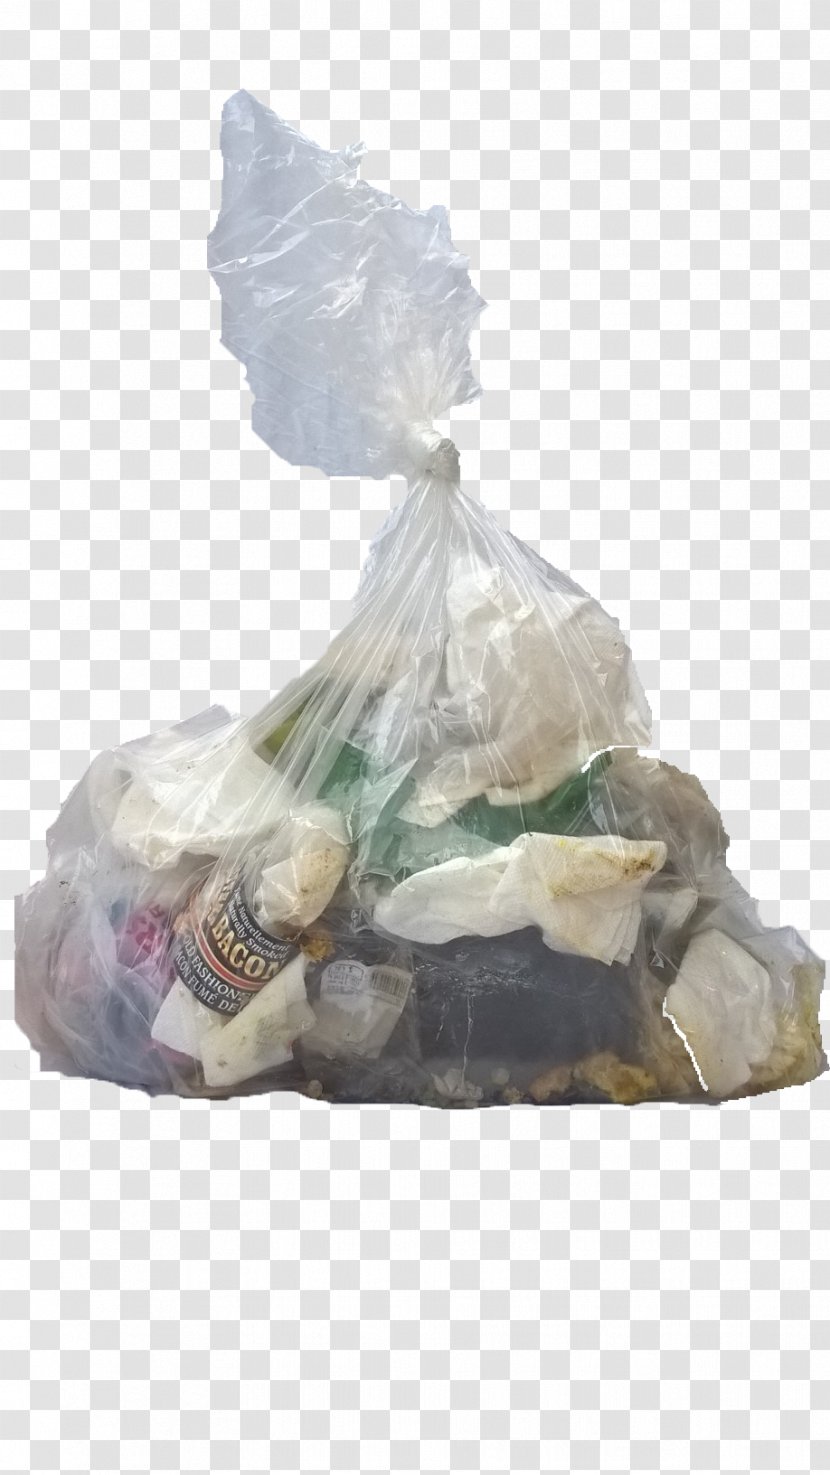 Douro-Dummer Bin Bag Plastic Waste - Bottle - Garbage Transparent PNG